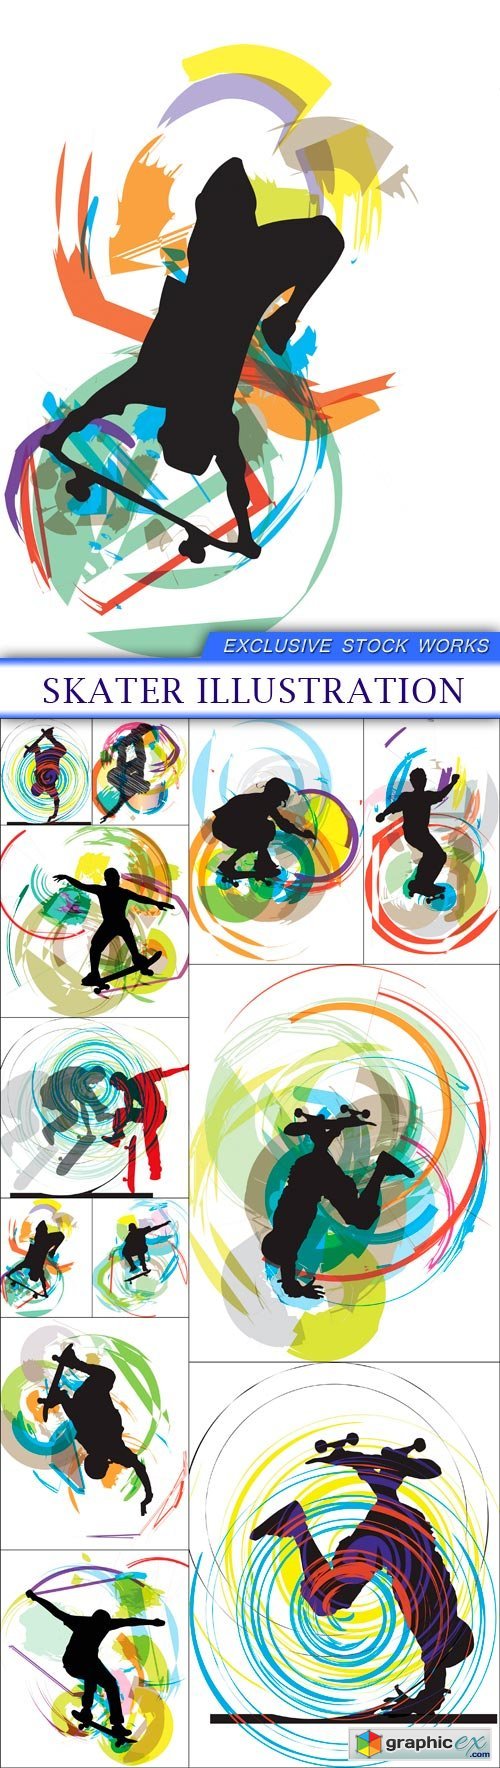 Skater illustration 12X EPS